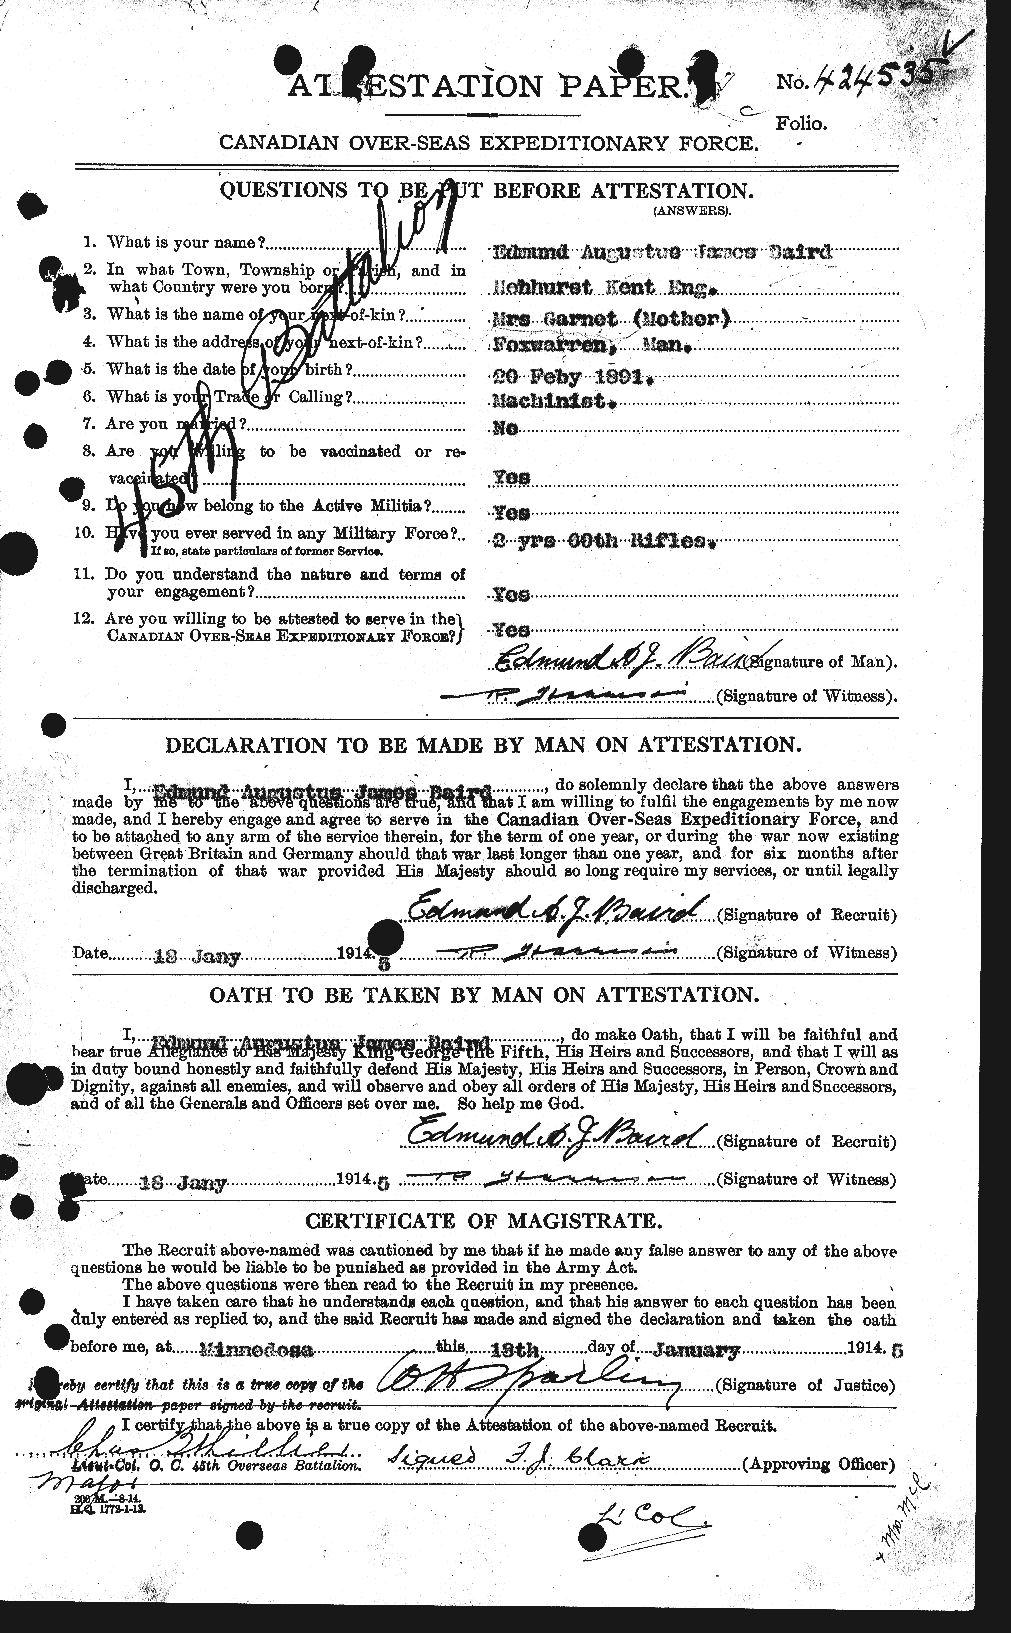 Dossiers du Personnel de la Première Guerre mondiale - CEC 226690a